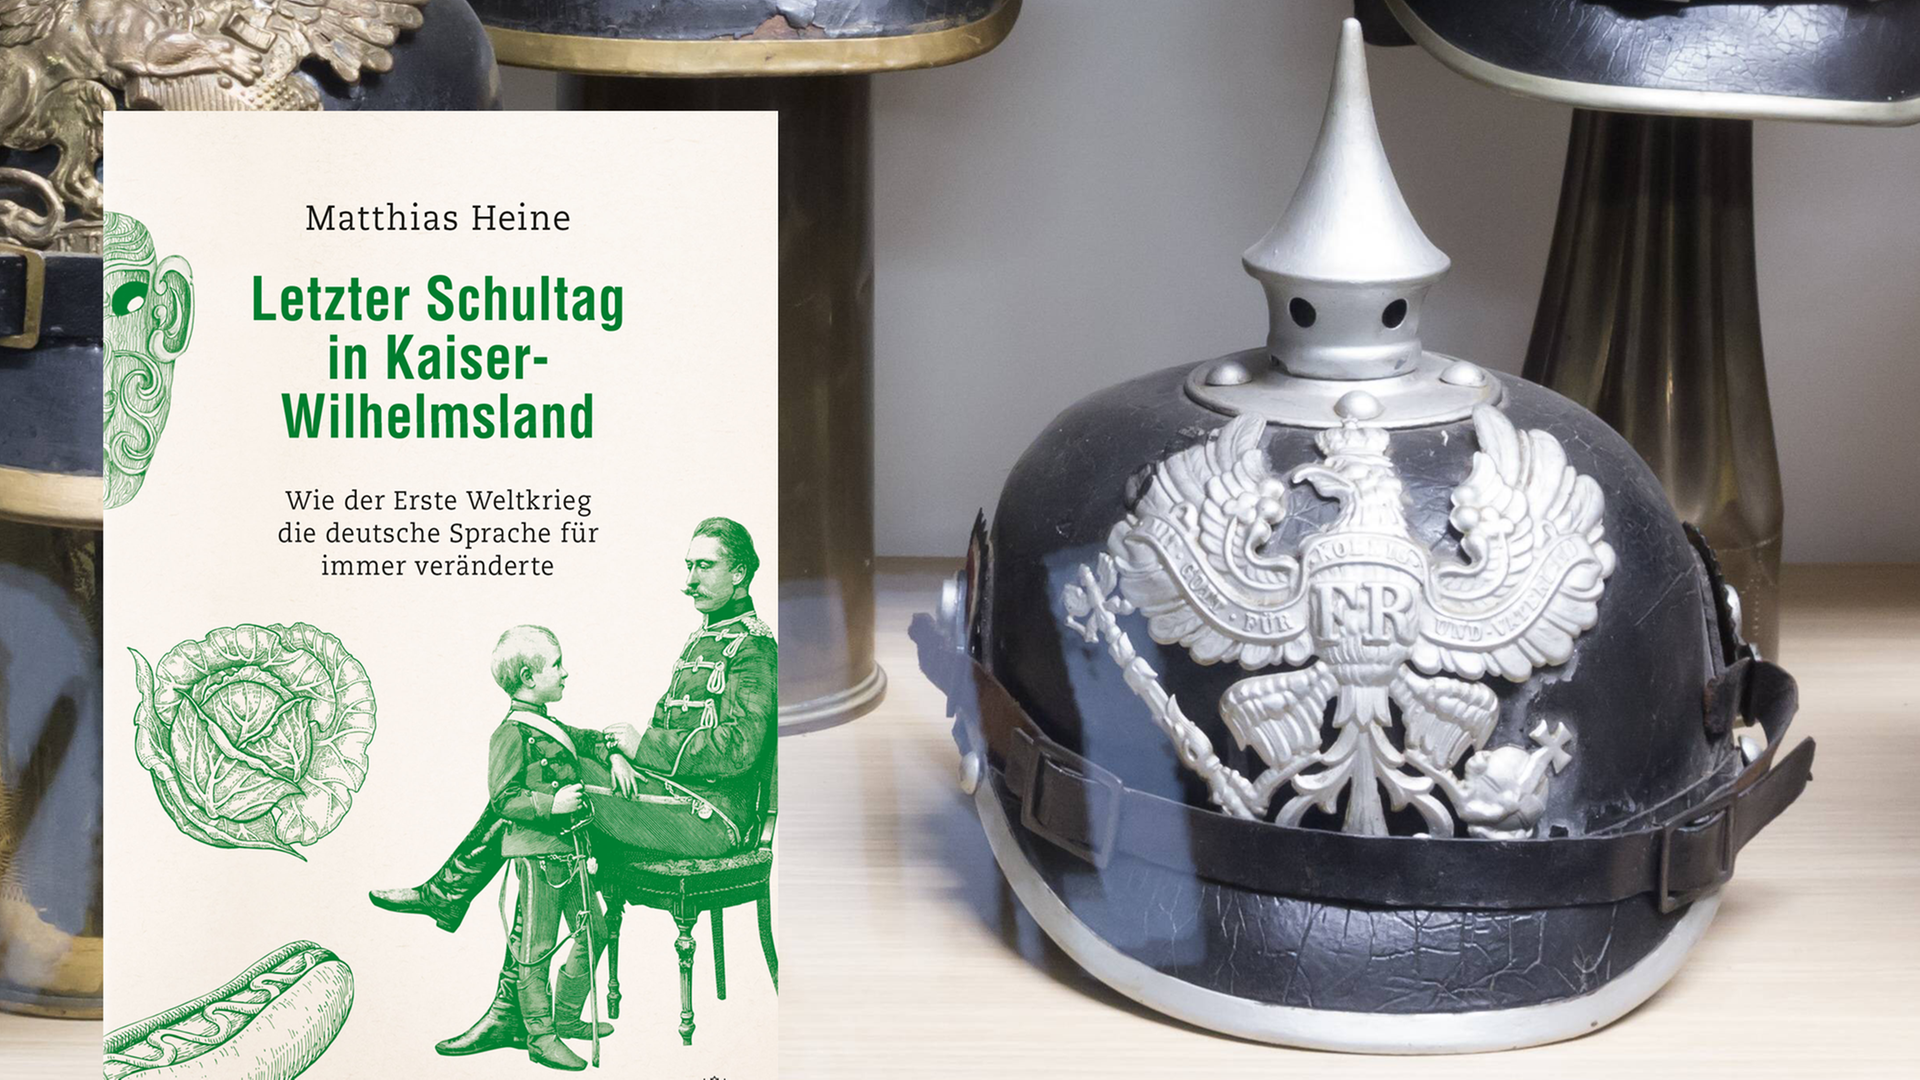 Eine Pickelhaube in einer Ausstellungsvitrine. Dafür das Cover zu Matthias Heines Buch "Letzer Schultag in Kaiser-Wilhelmsland" auf dem eine Zeichnung des Schulalltags im frühen 20. Jahrhundert zu sehen ist.